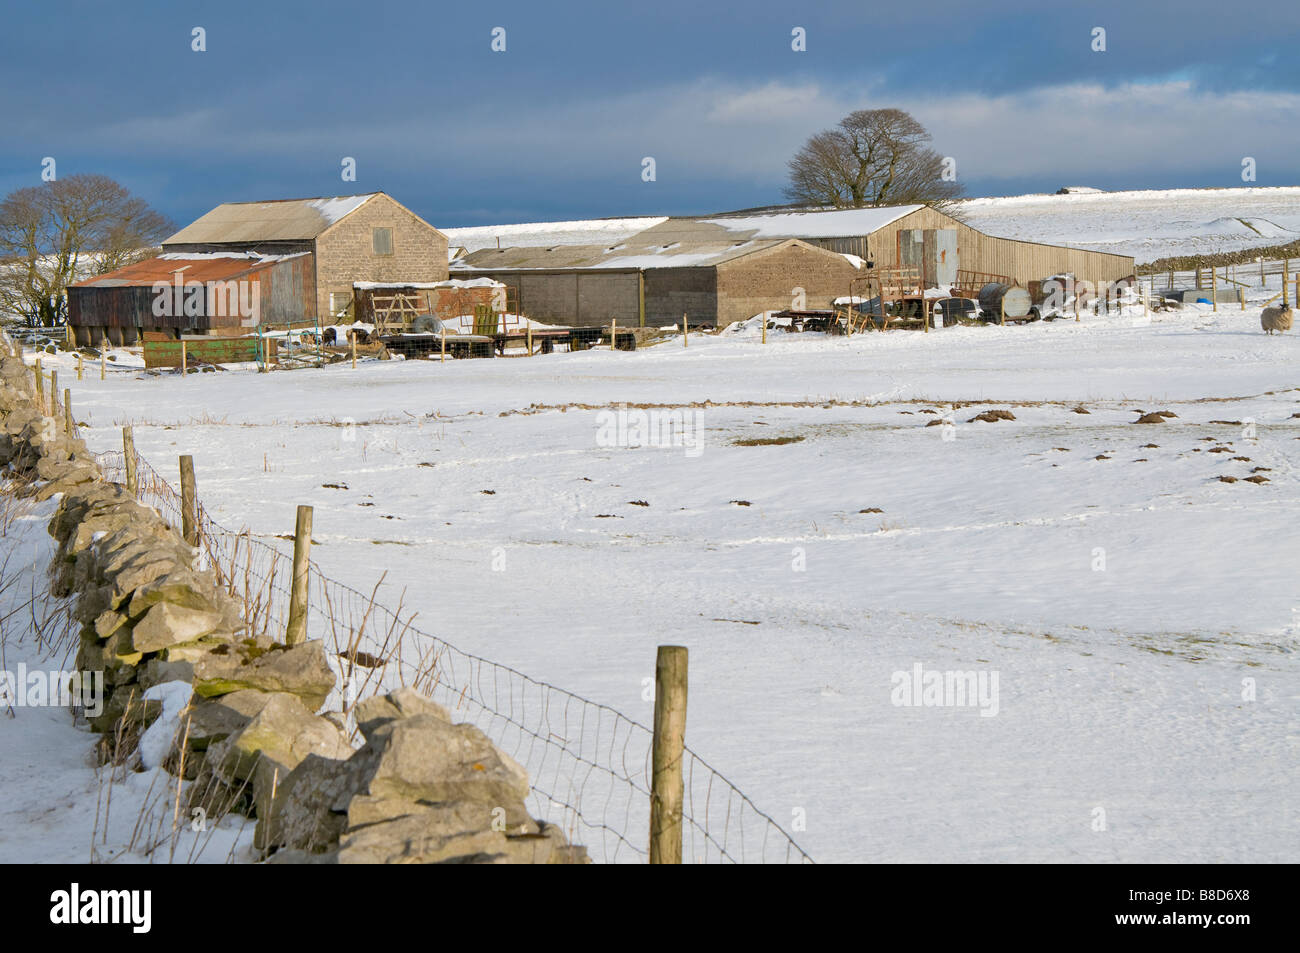 Peak District Hill Farm, près de Forcella Staulanza et Mam Tor Derbyshire, Angleterre Banque D'Images